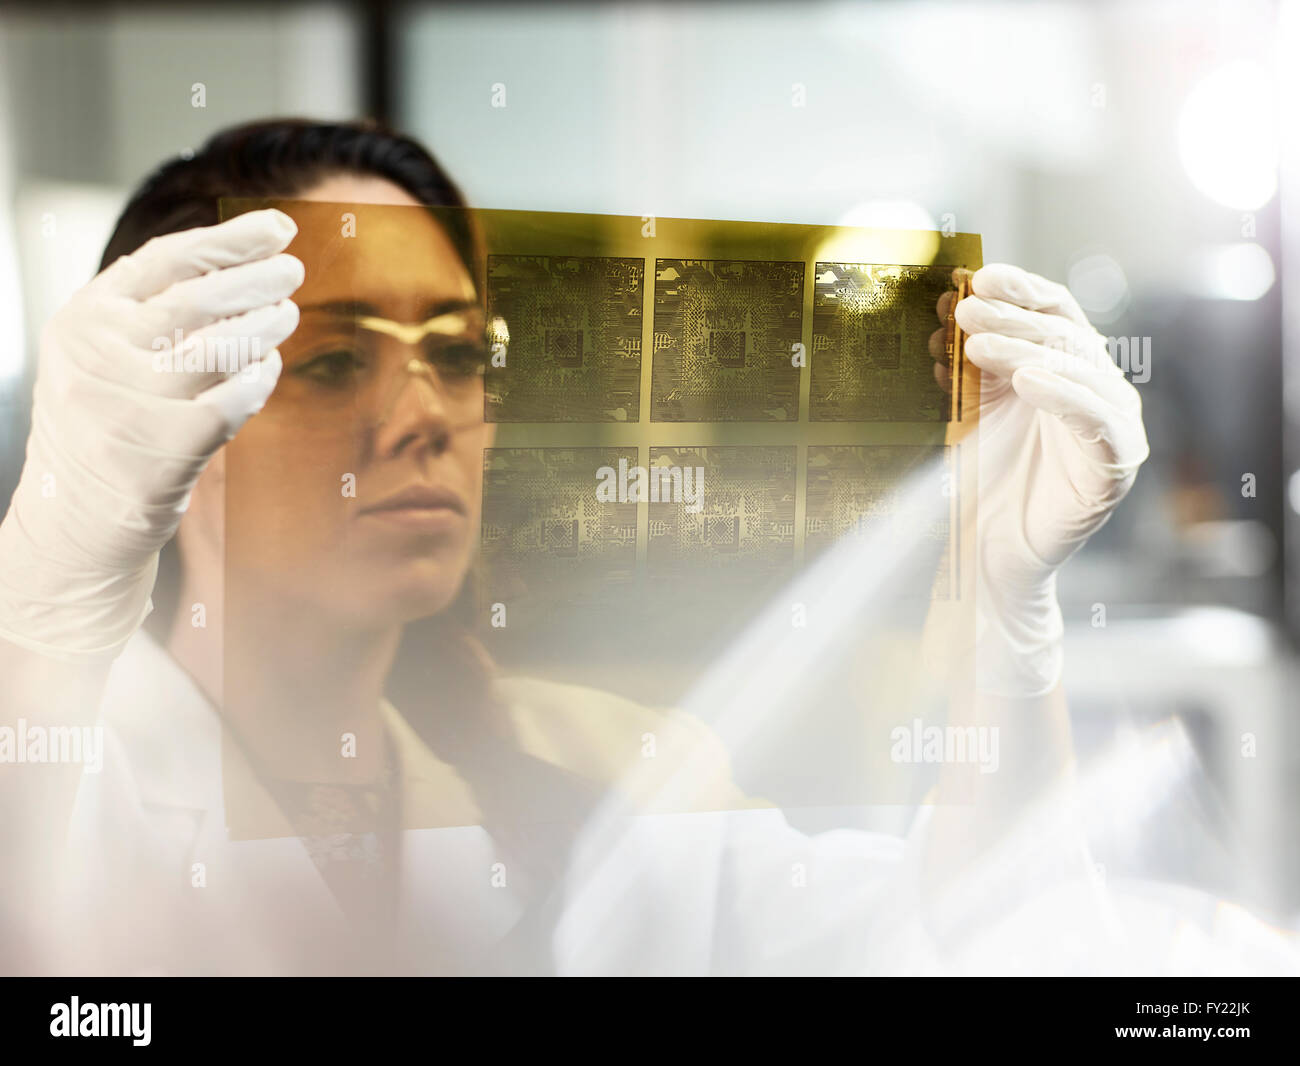 Donna, 25-30 anni, in plastica guanti e occhiali di protezione, controllare i circuiti elettronici stampati su pellicola in un laboratorio di elettronica Foto Stock